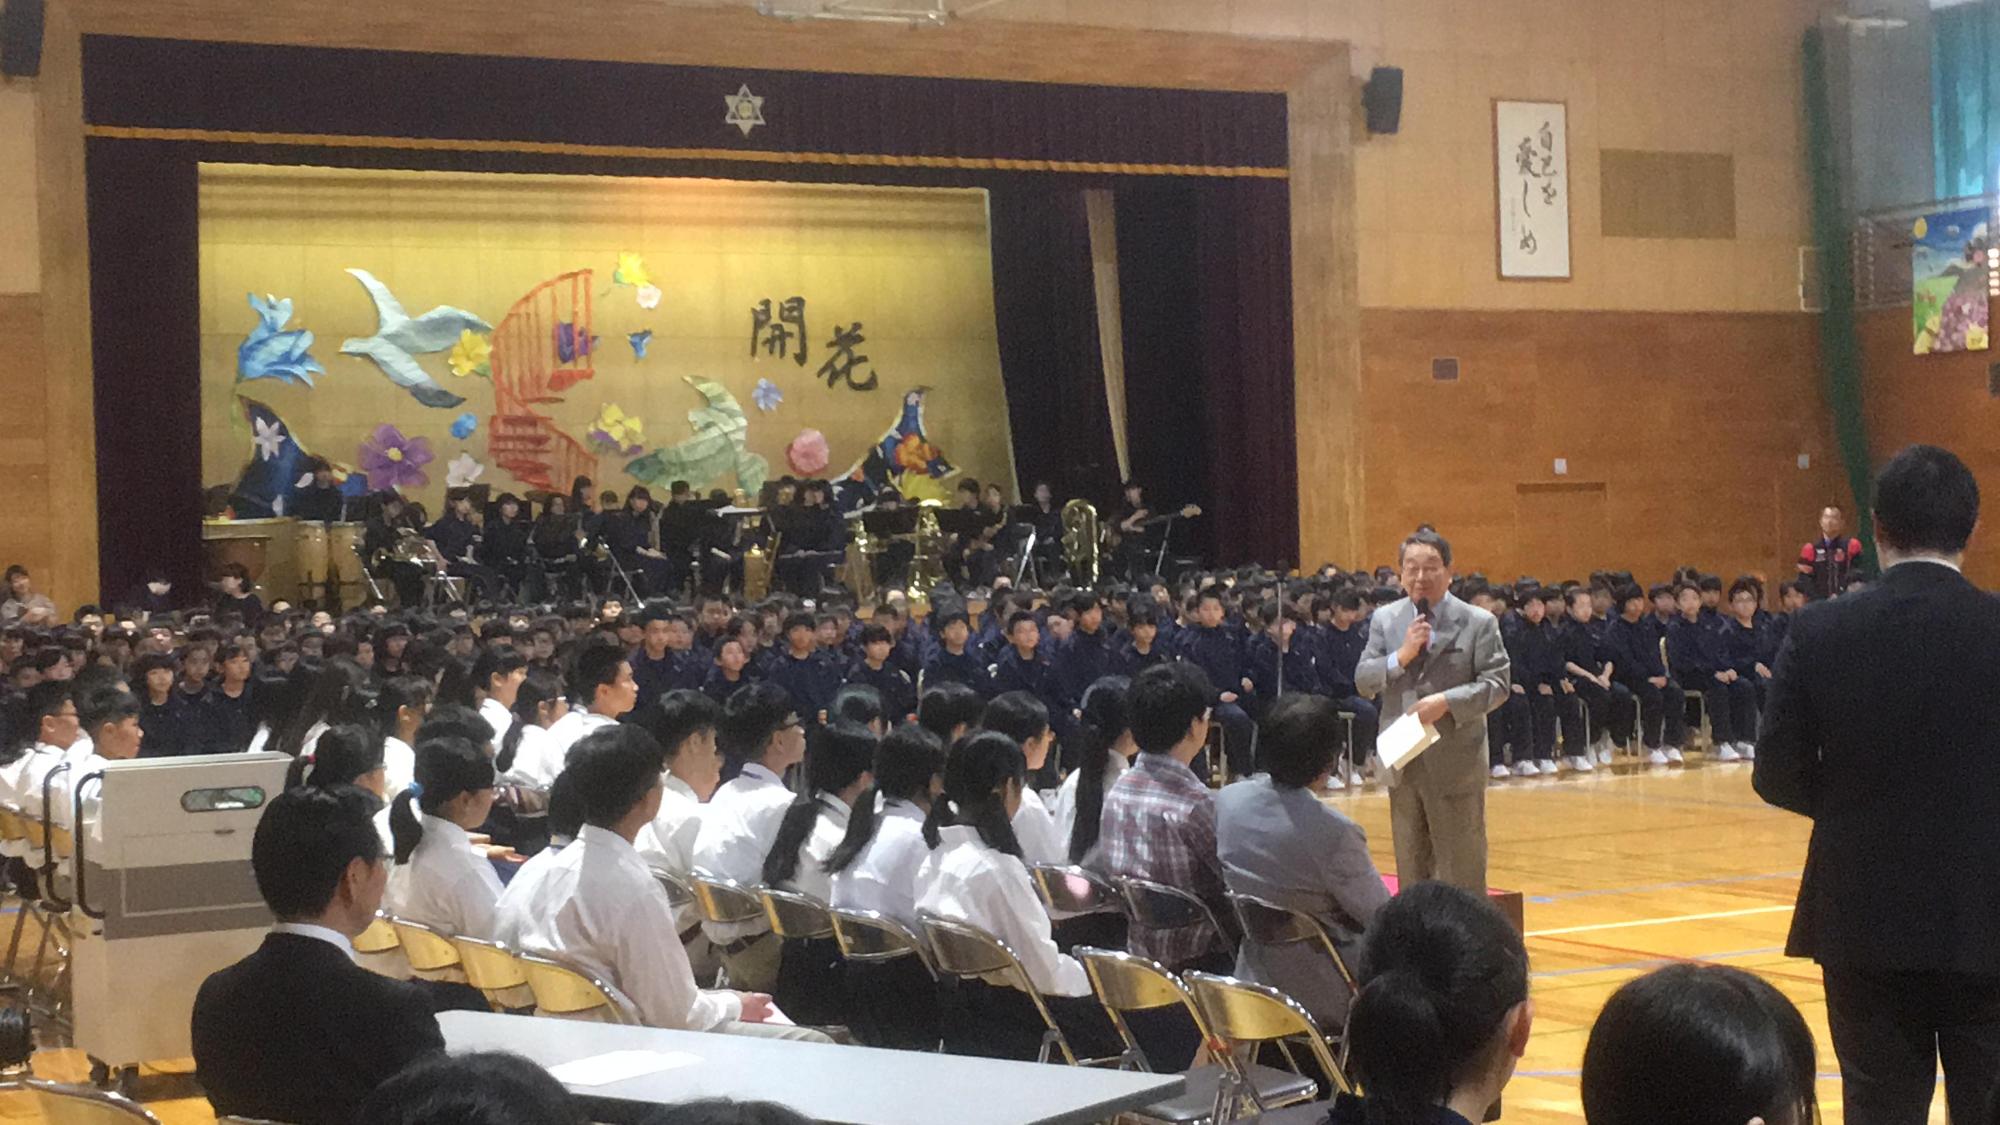 台湾の中学生が恵明中学校を訪れ、歓迎セレモニーにて挨拶をしている原田市長の写真